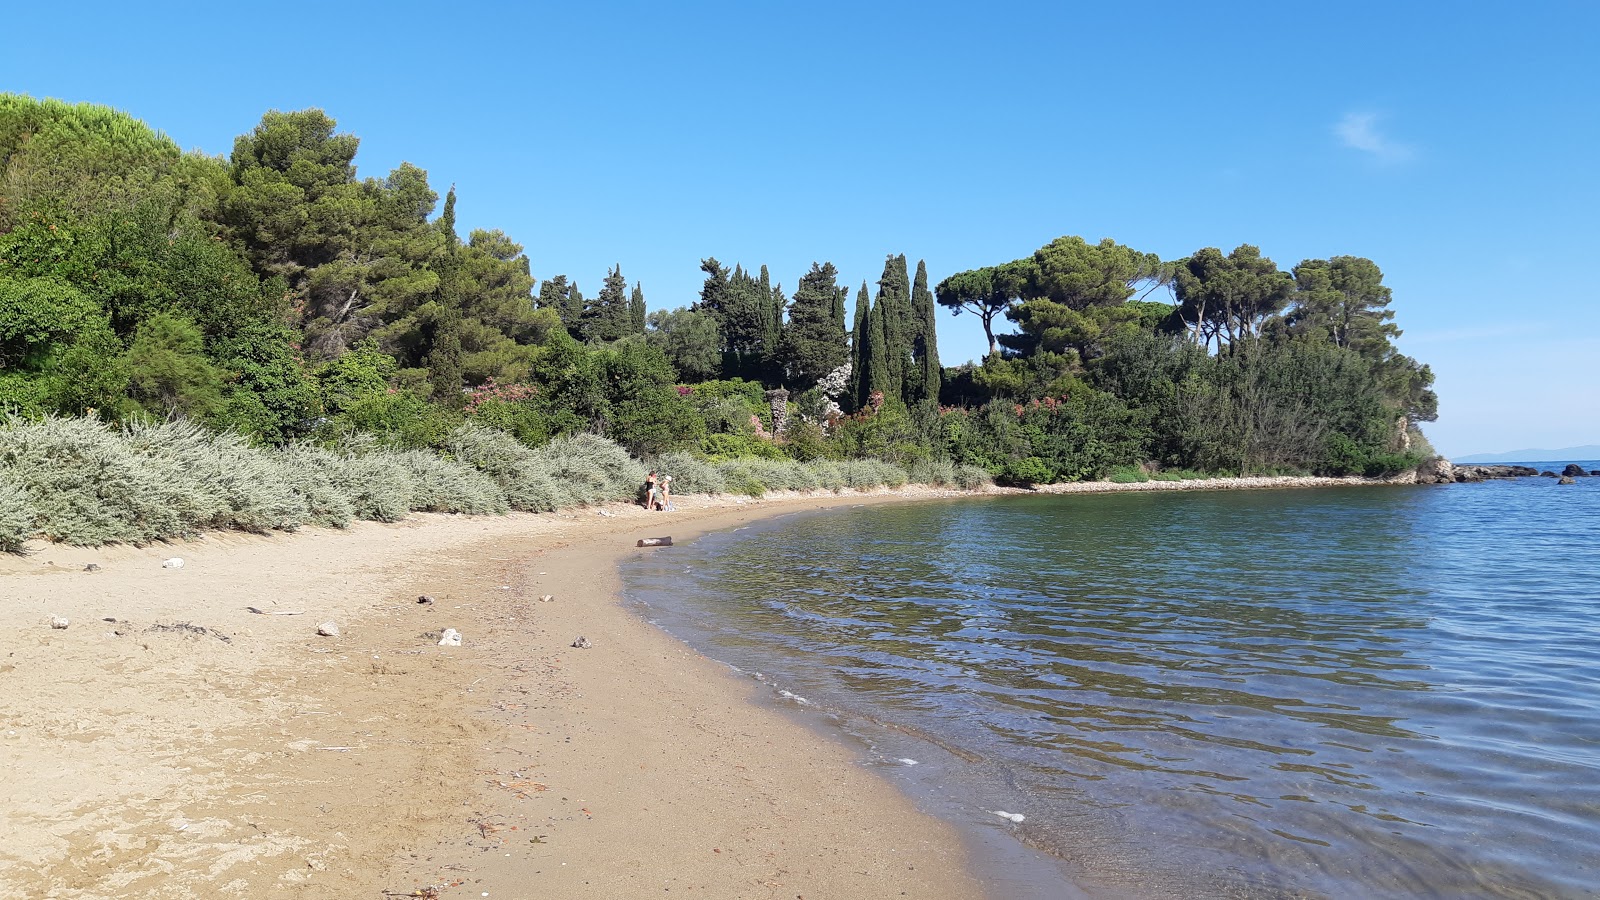 Photo of Spaggia di Domiziano beach resort area